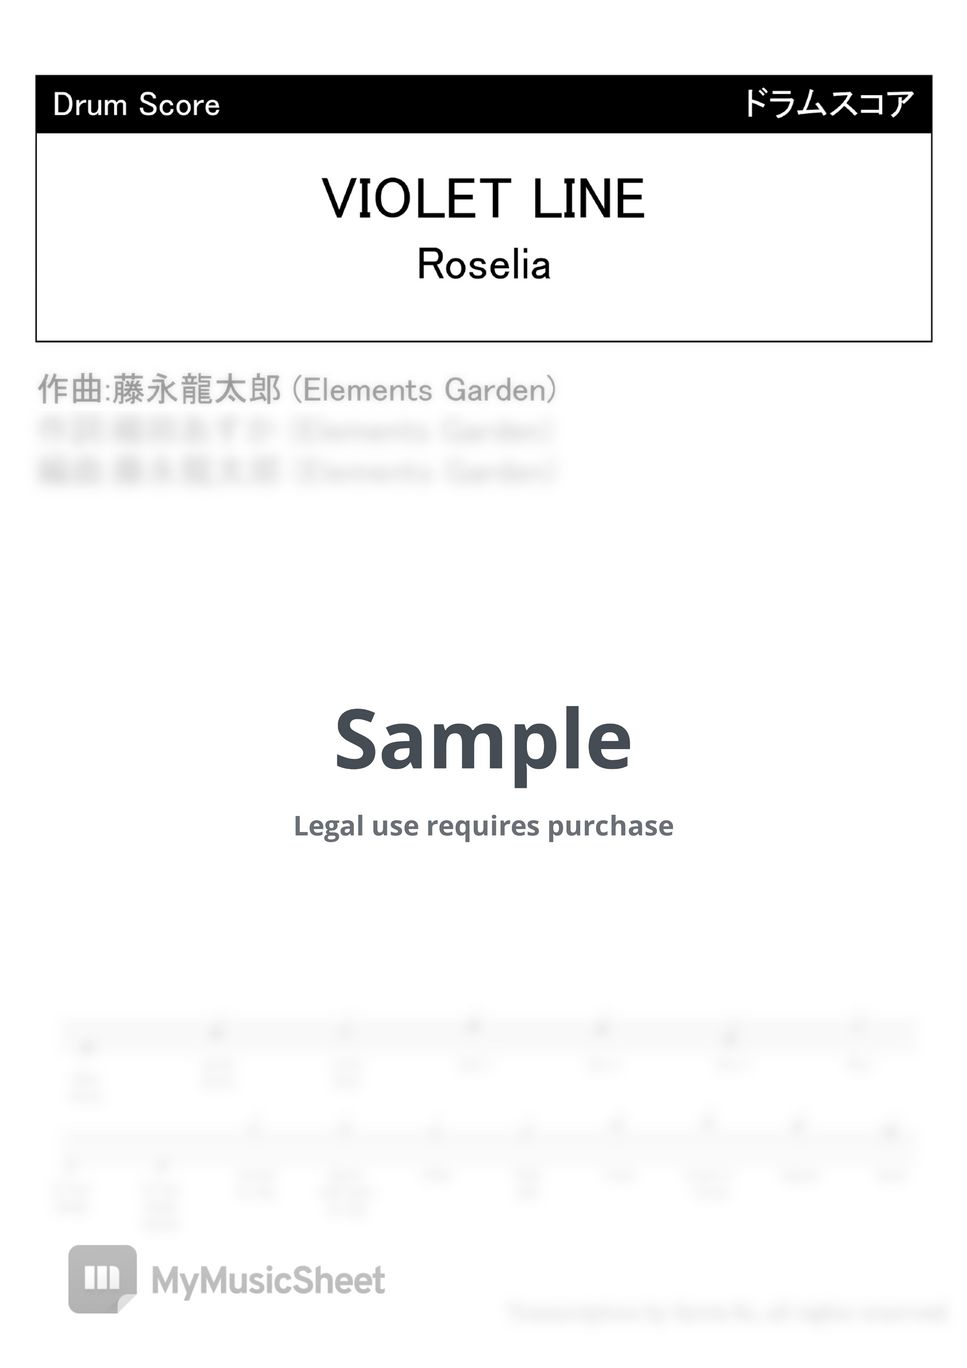 Roselia - VIOLET LINE by Kevin Kc